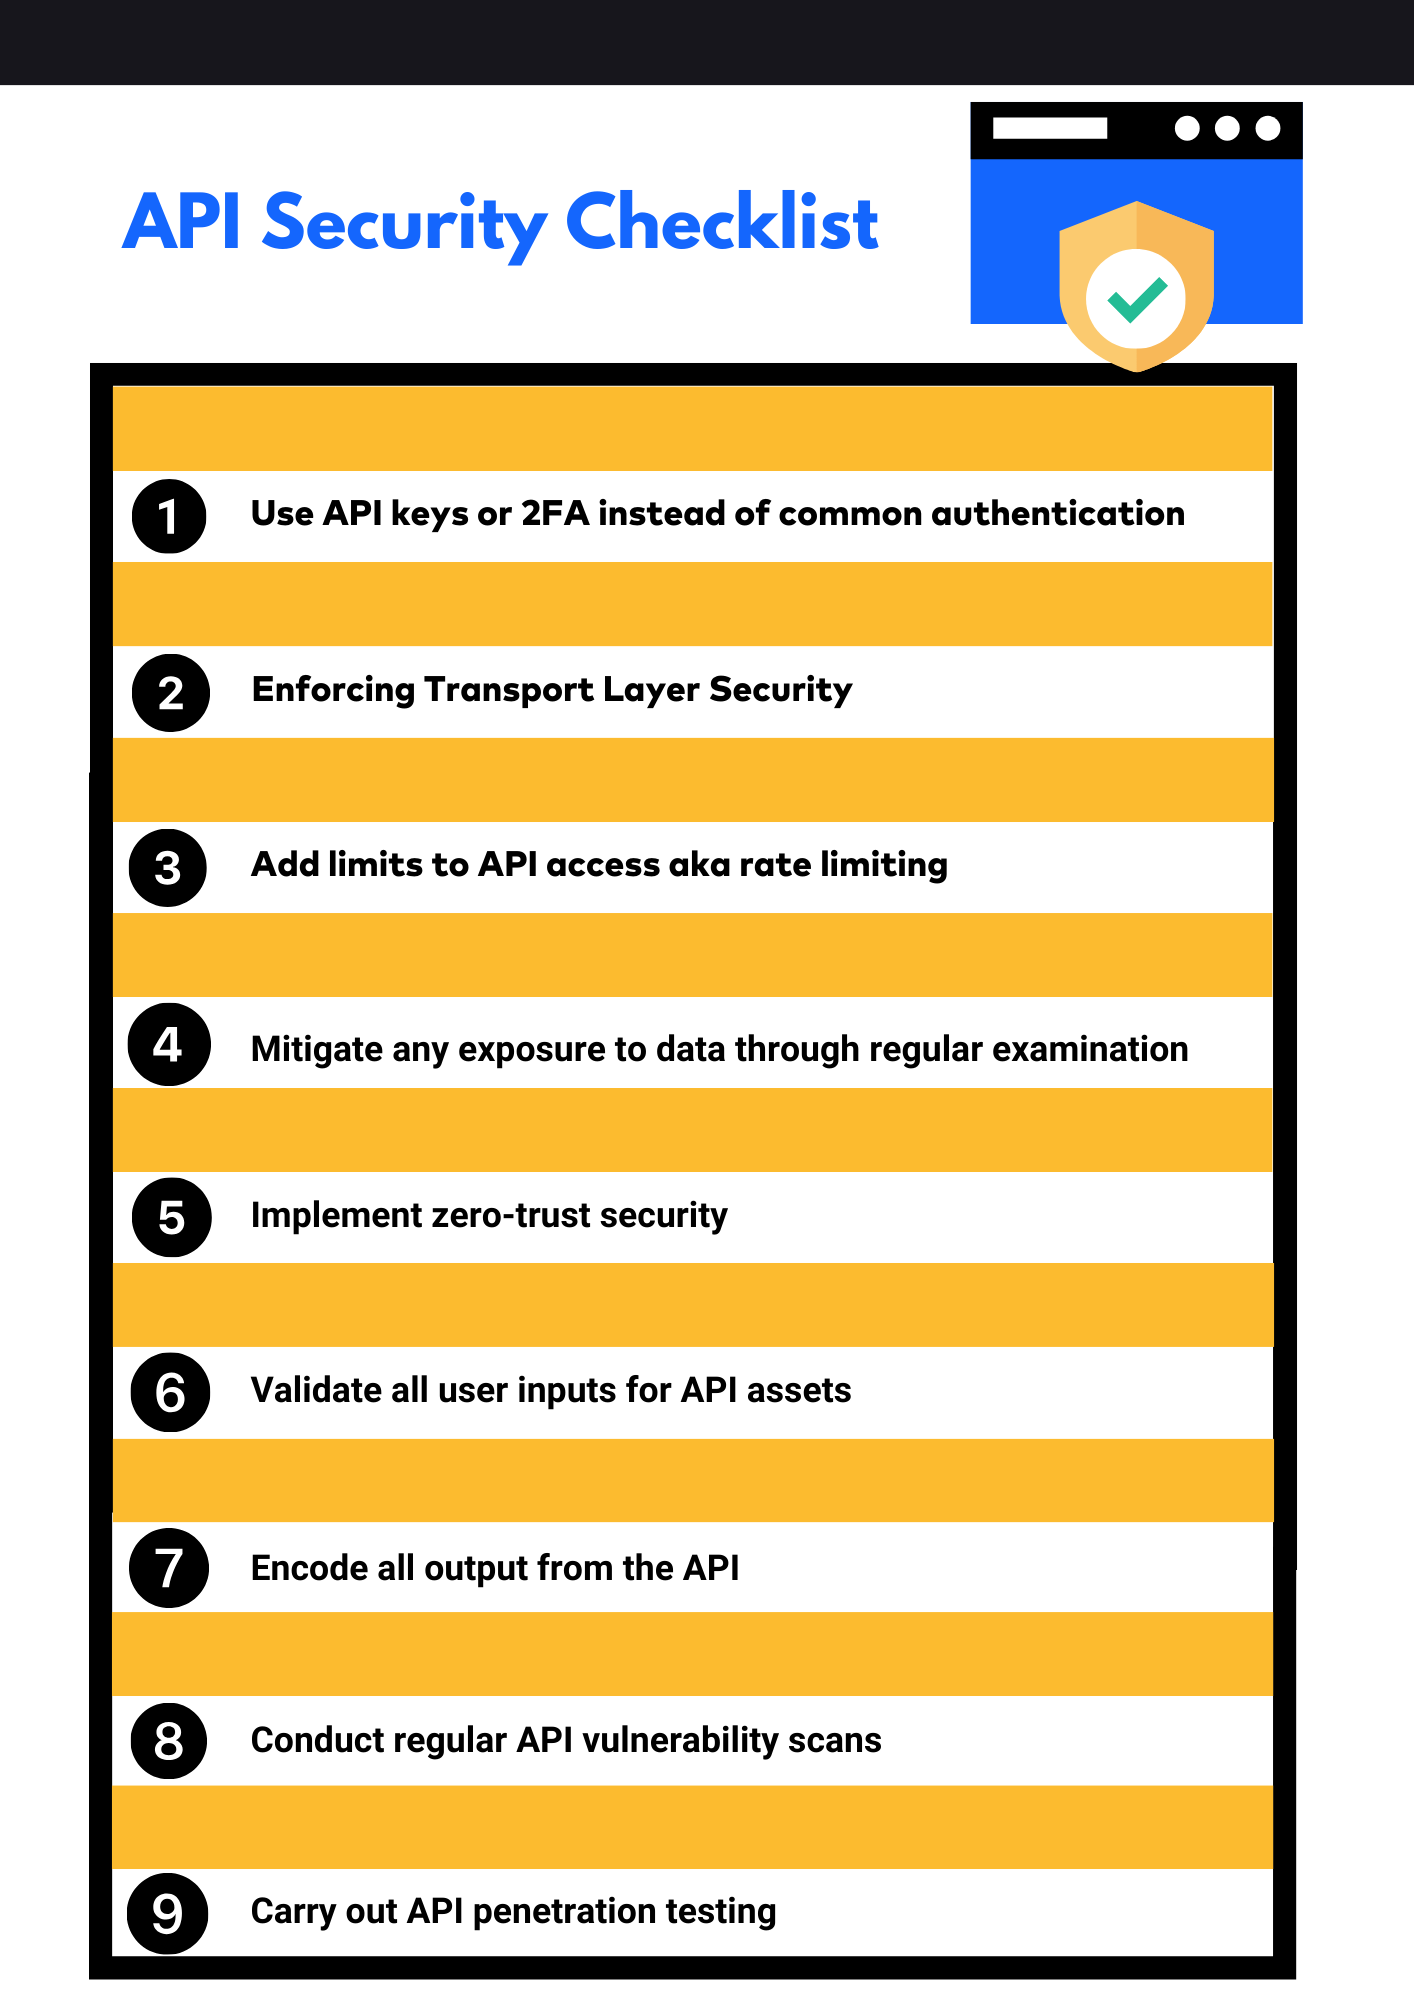 API security checklist